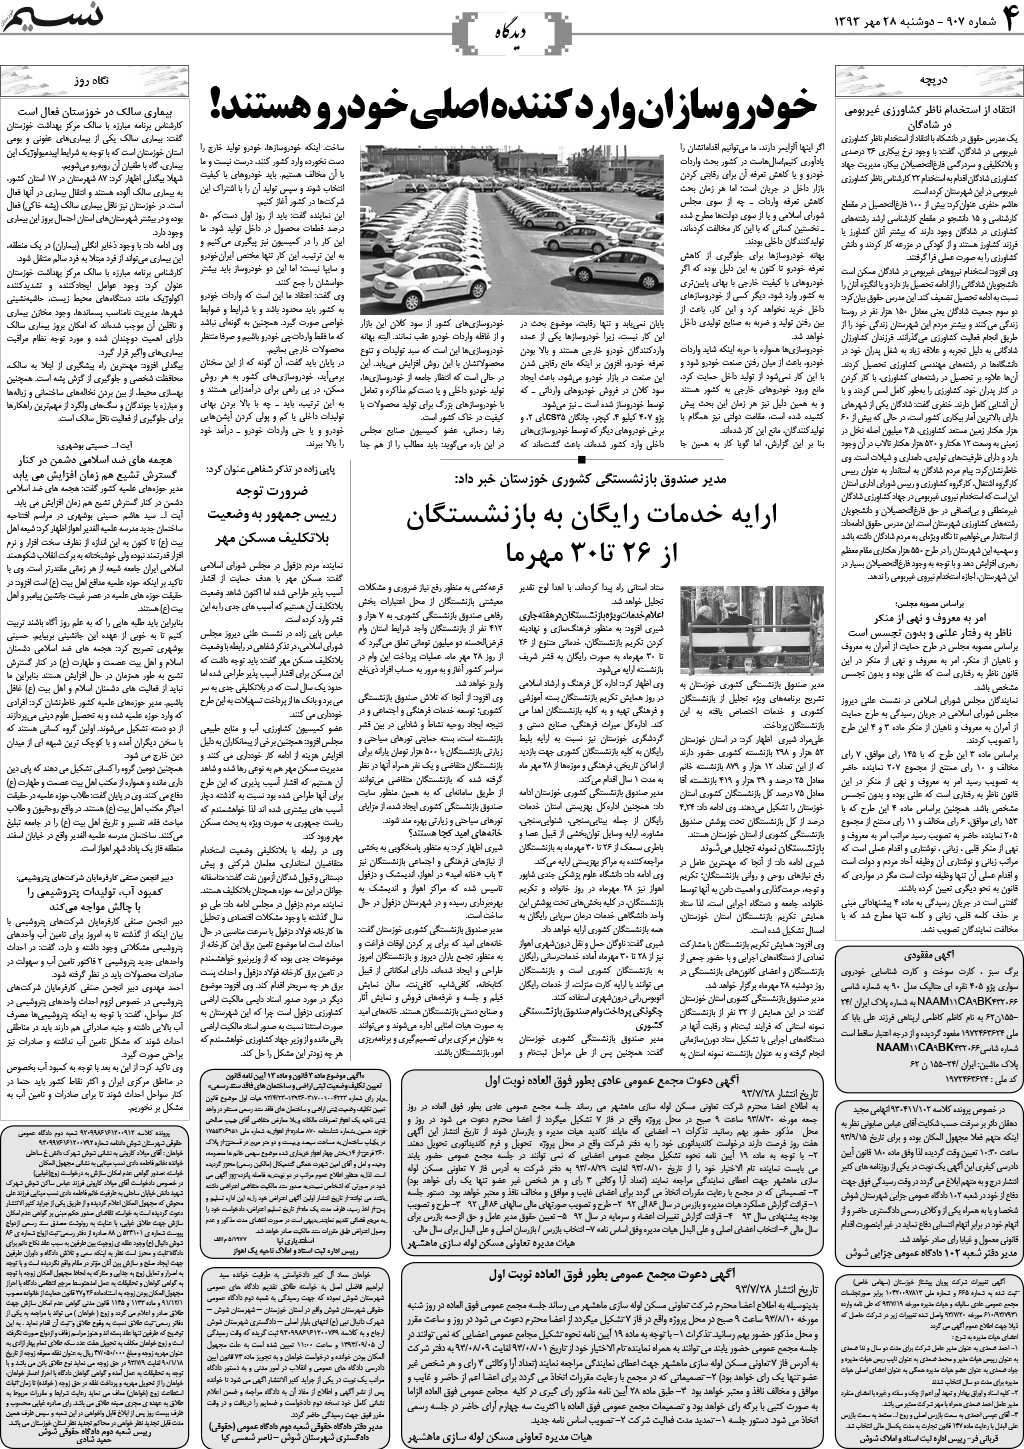 صفحه دیدگاه روزنامه نسیم شماره 907